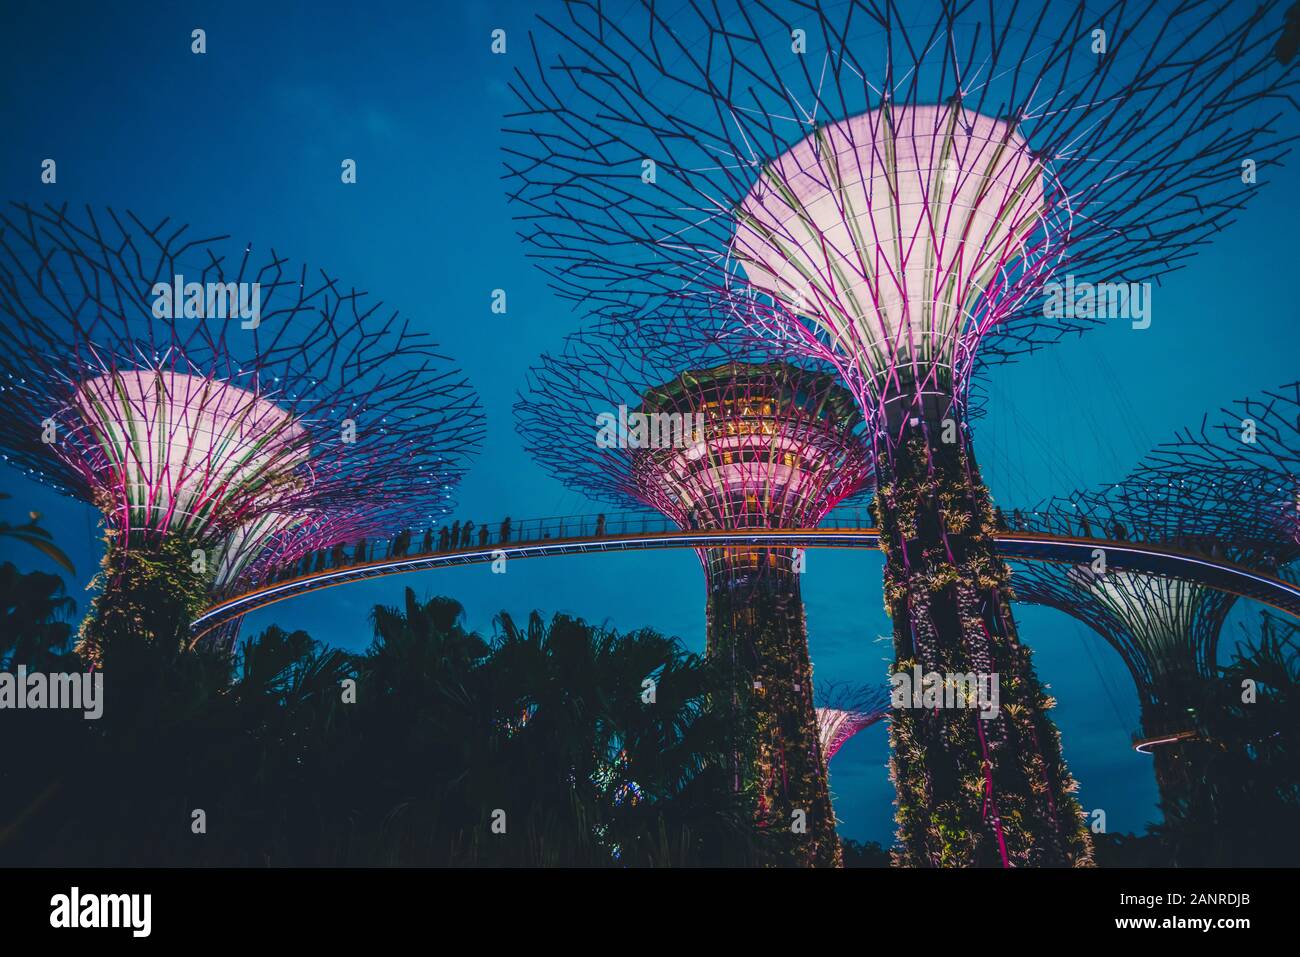 L'offre super arbres dans les jardins par l'attraction de la baie de Singapour Banque D'Images